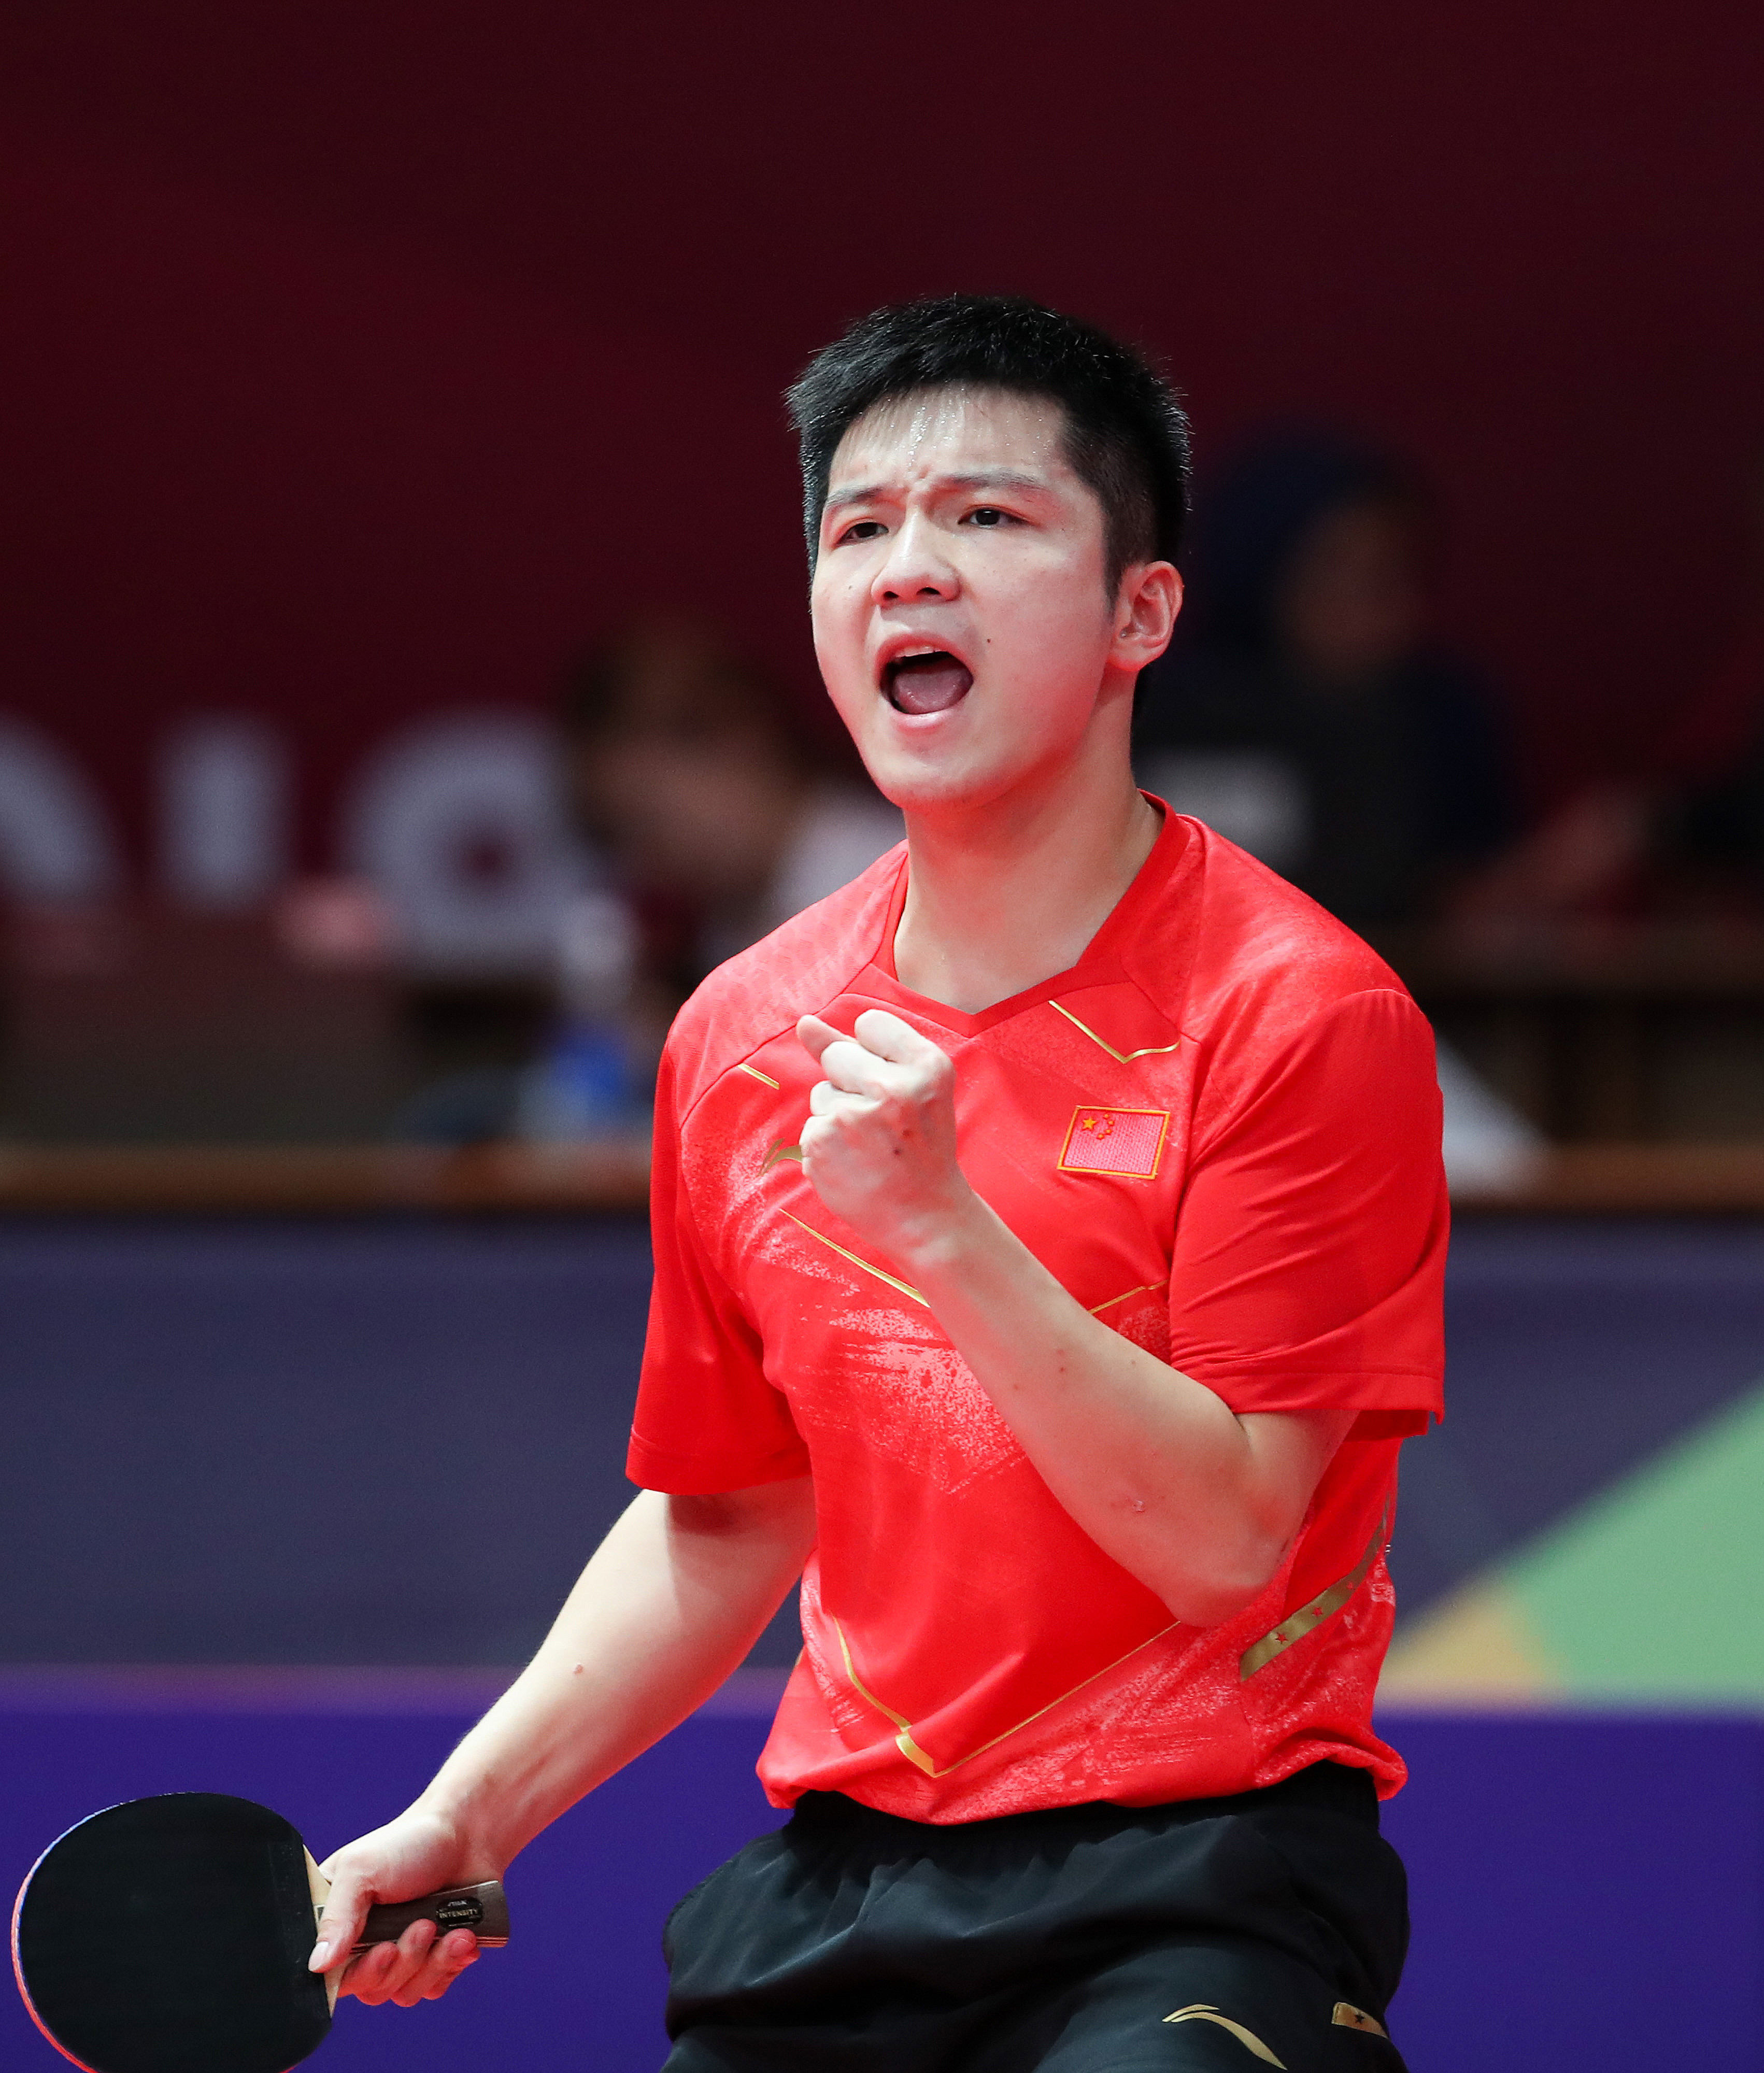 高清图:亚运乒乓男单决赛 樊振东夺冠激情怒吼